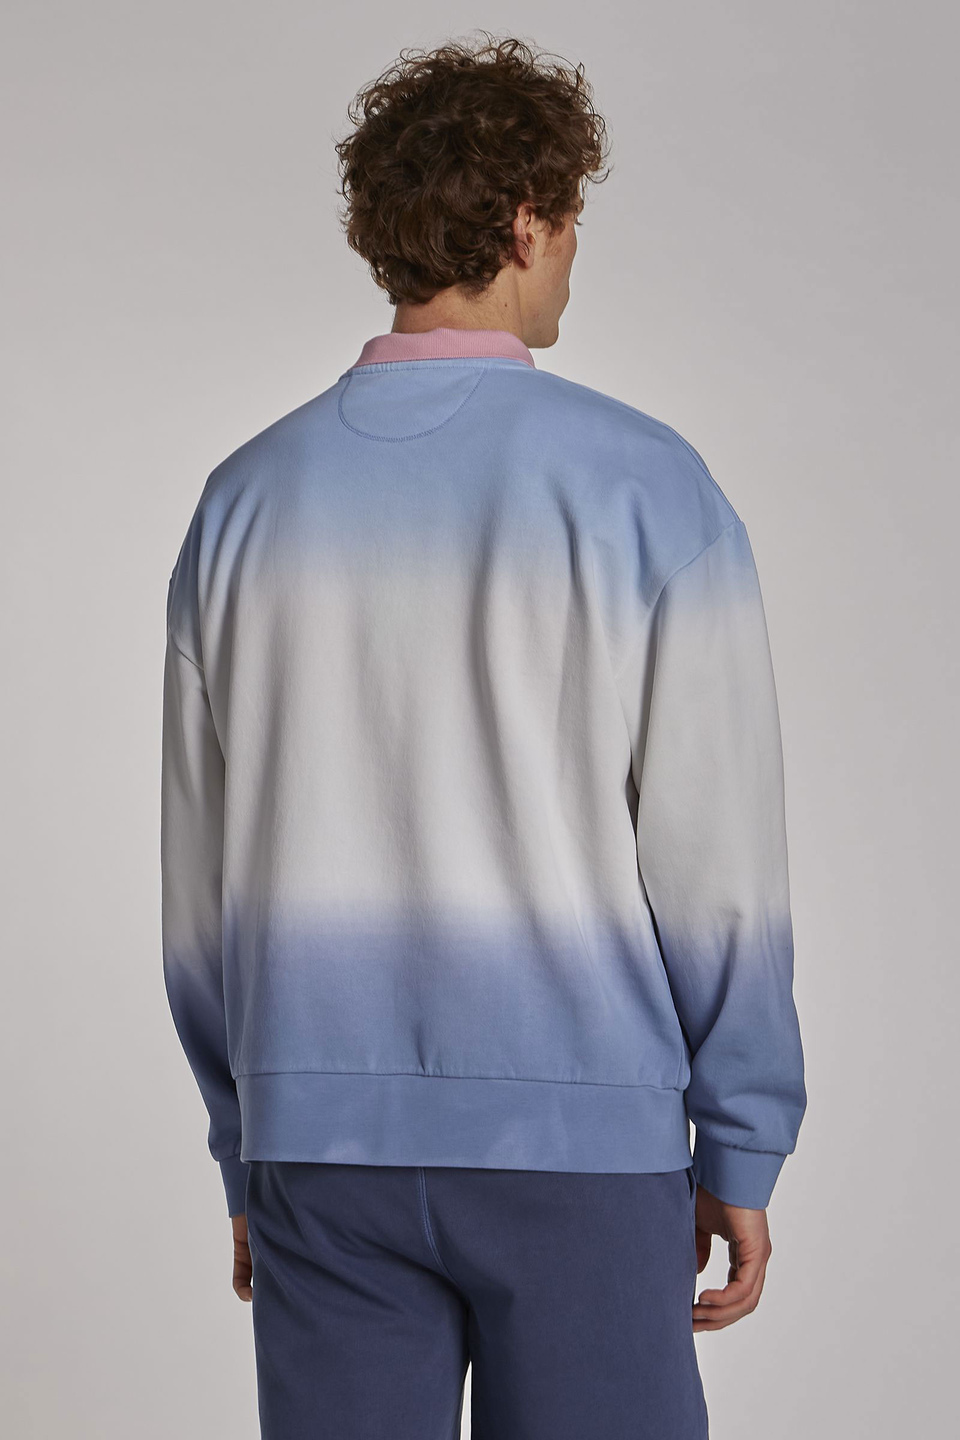 Herren-Sweatshirt aus 100 % Baumwolle mit Rundhalsausschnitt, oversized Modell | La Martina - Official Online Shop